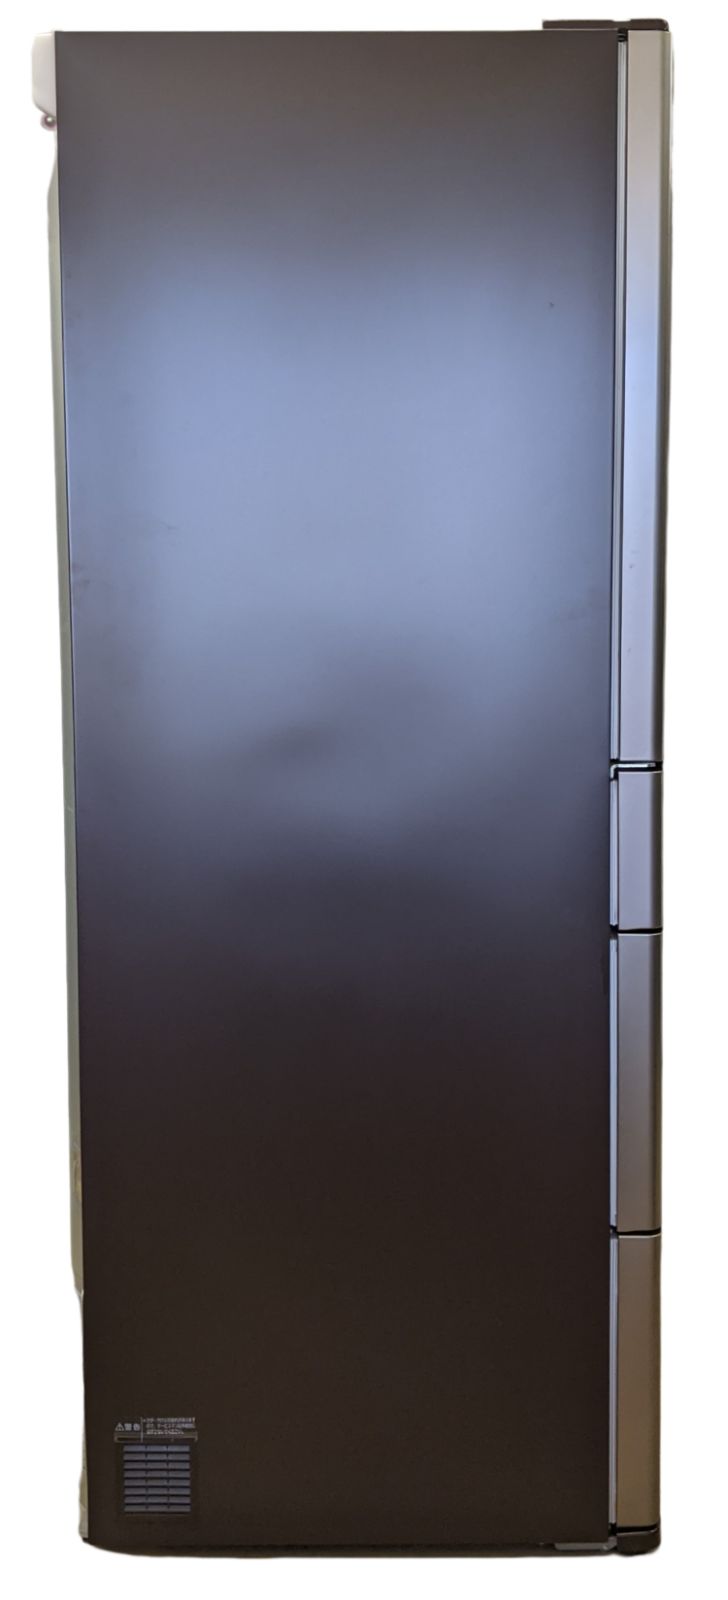 送料込】日立ノンフロン冷凍冷蔵庫6ドア/R-A5700-1XT型/2011年製 - 冷蔵庫